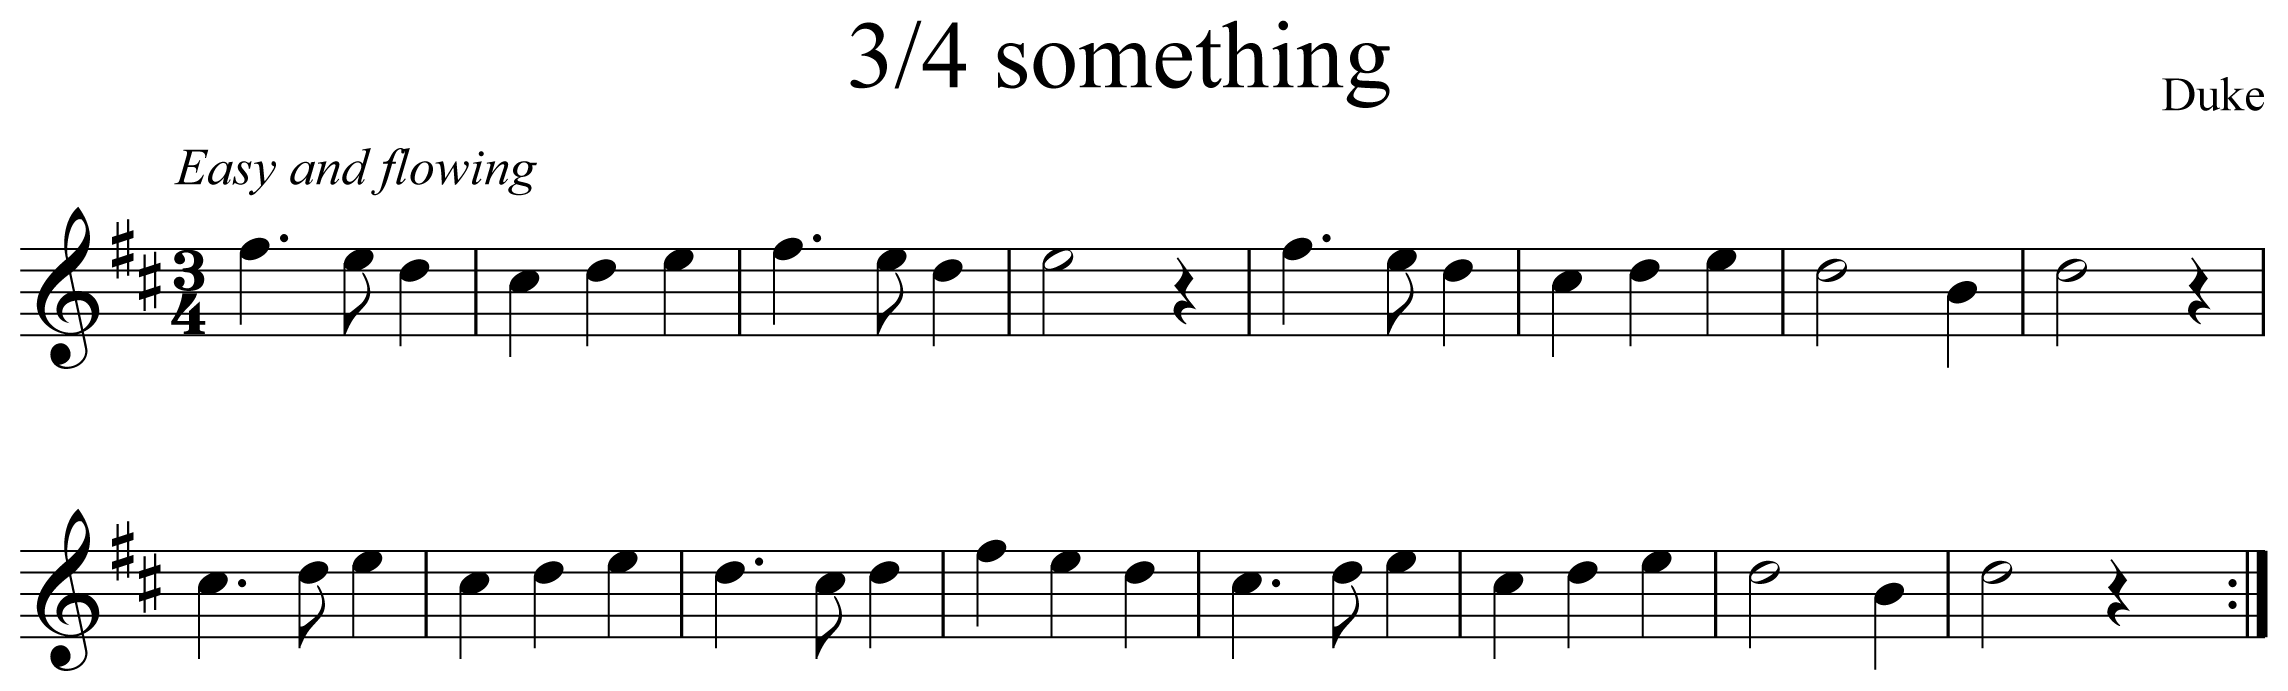 3/4 Something Notation Saxophone